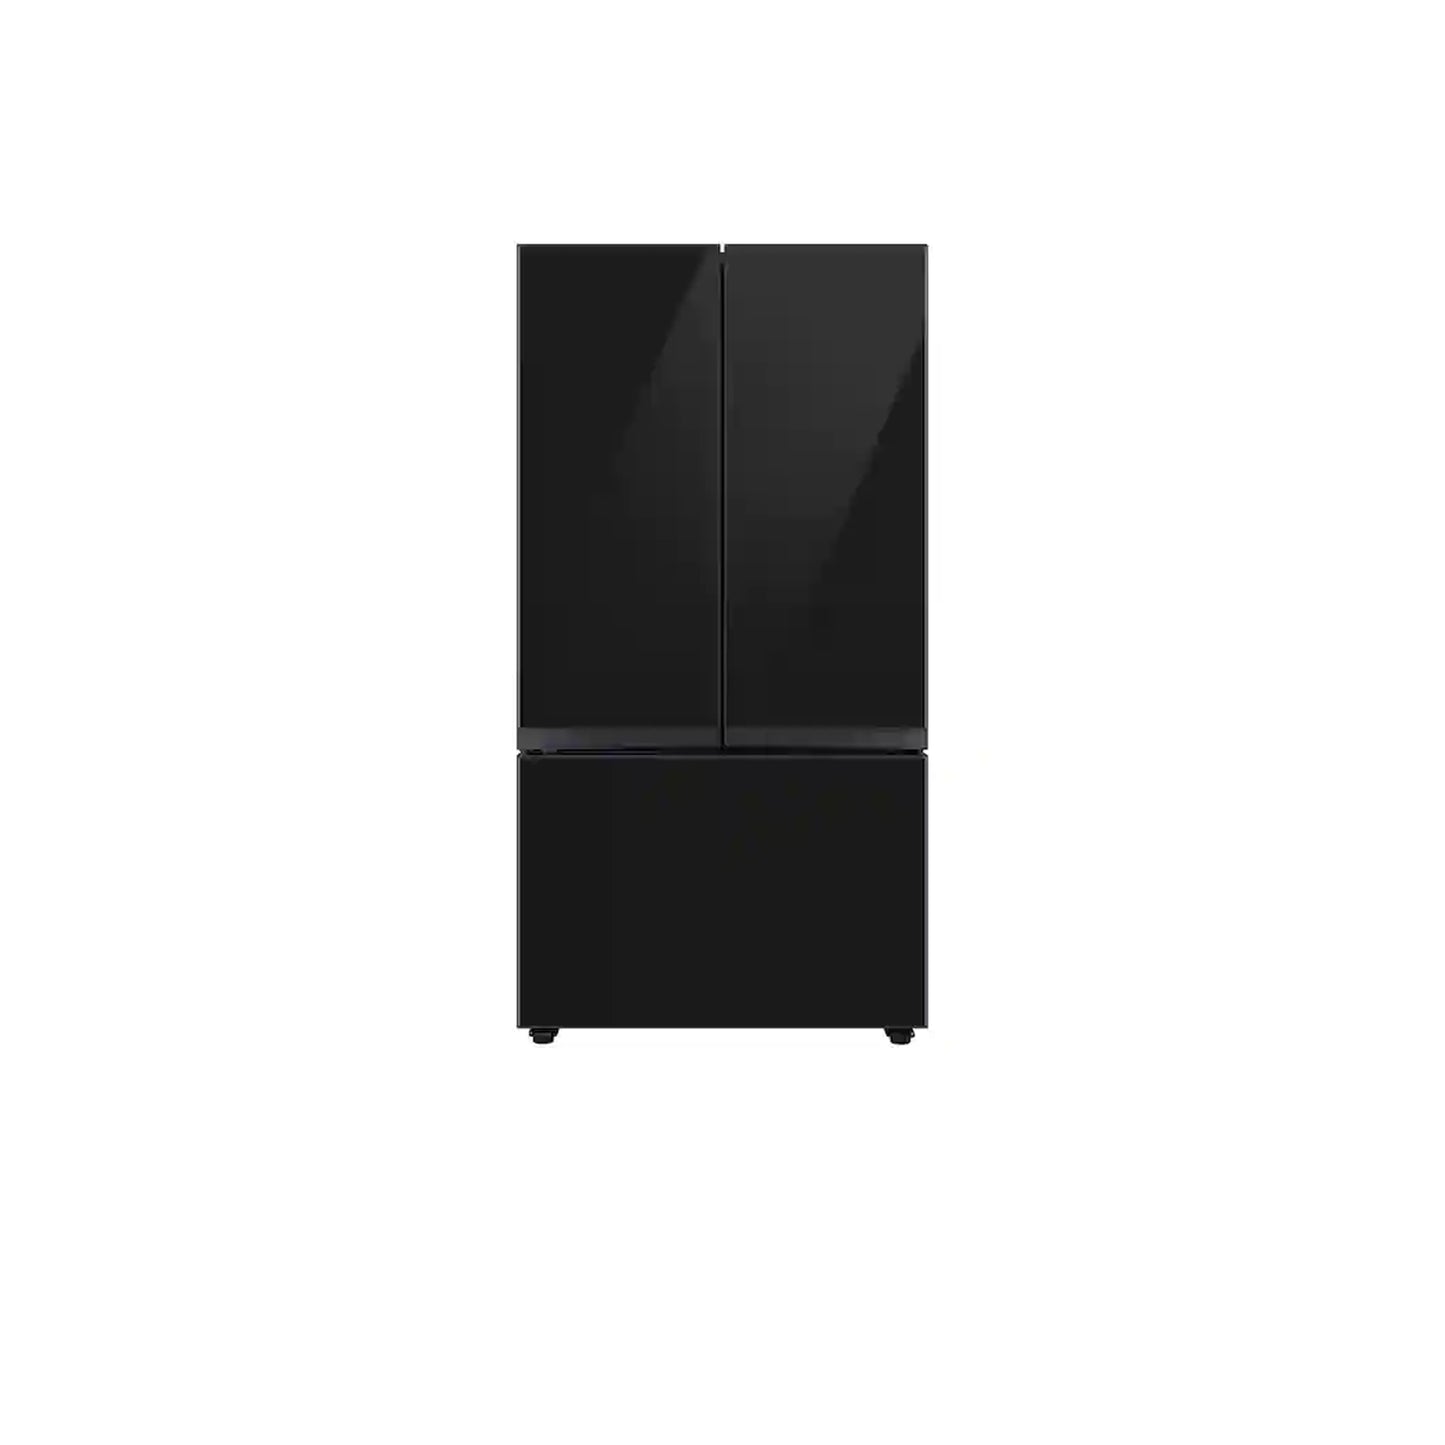 ثلاجة مخصصة بباب فرنسي بثلاثة أبواب (24 قدمًا مكعبًا) مزودة بمركز المشروبات™ من الفولاذ المقاوم للصدأ. 